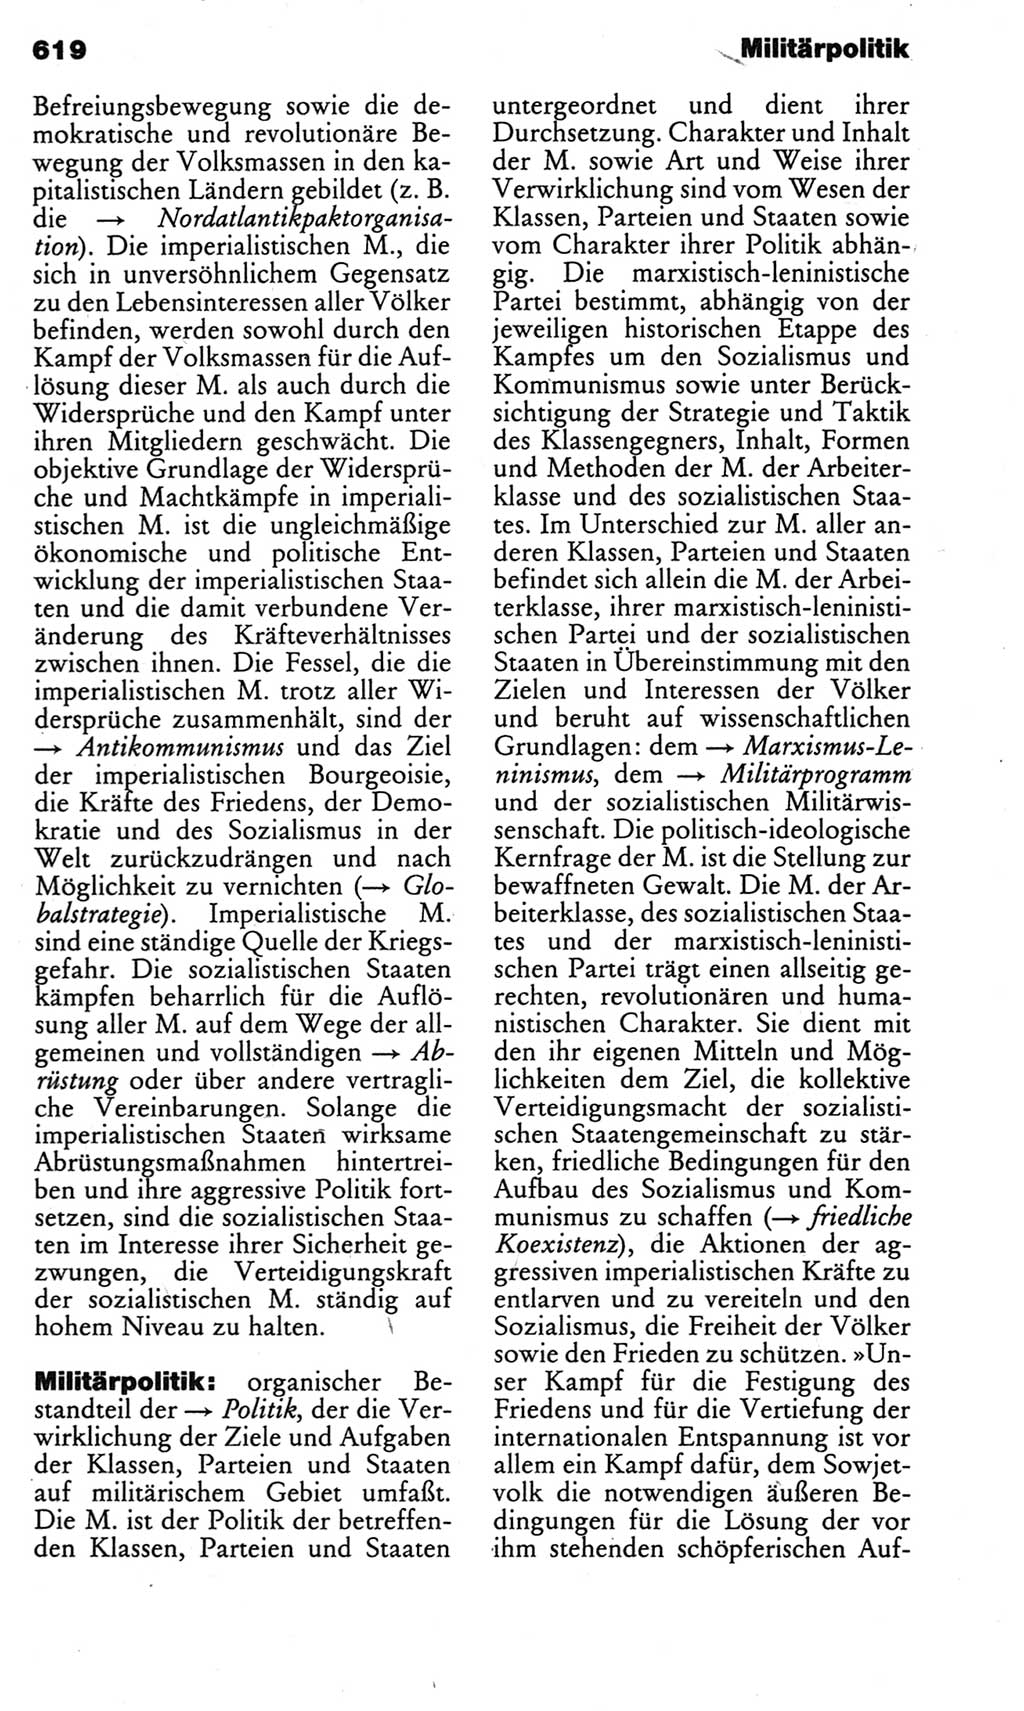 Kleines politisches Wörterbuch [Deutsche Demokratische Republik (DDR)] 1983, Seite 619 (Kl. pol. Wb. DDR 1983, S. 619)